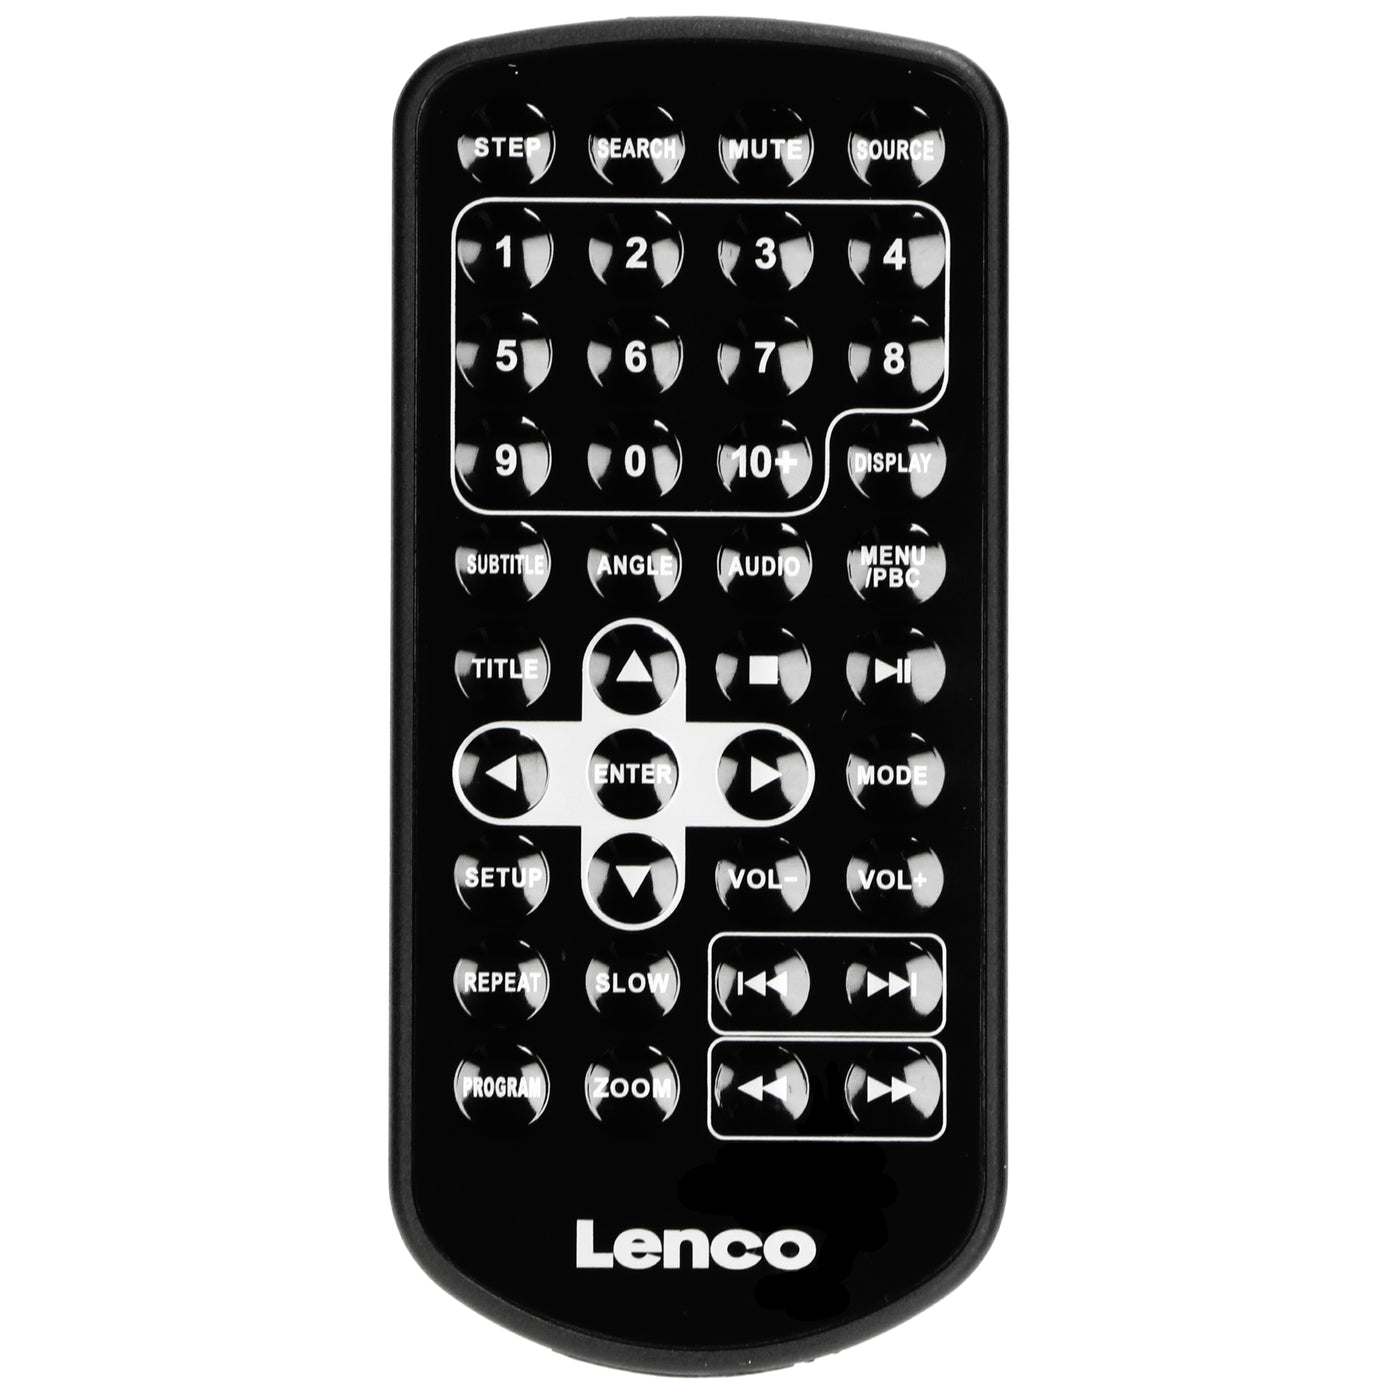 LENCO MES-415 - Duo Przenośne odtwarzacze DVD USB | Kompaktowy i rodzinny | LENCO.com